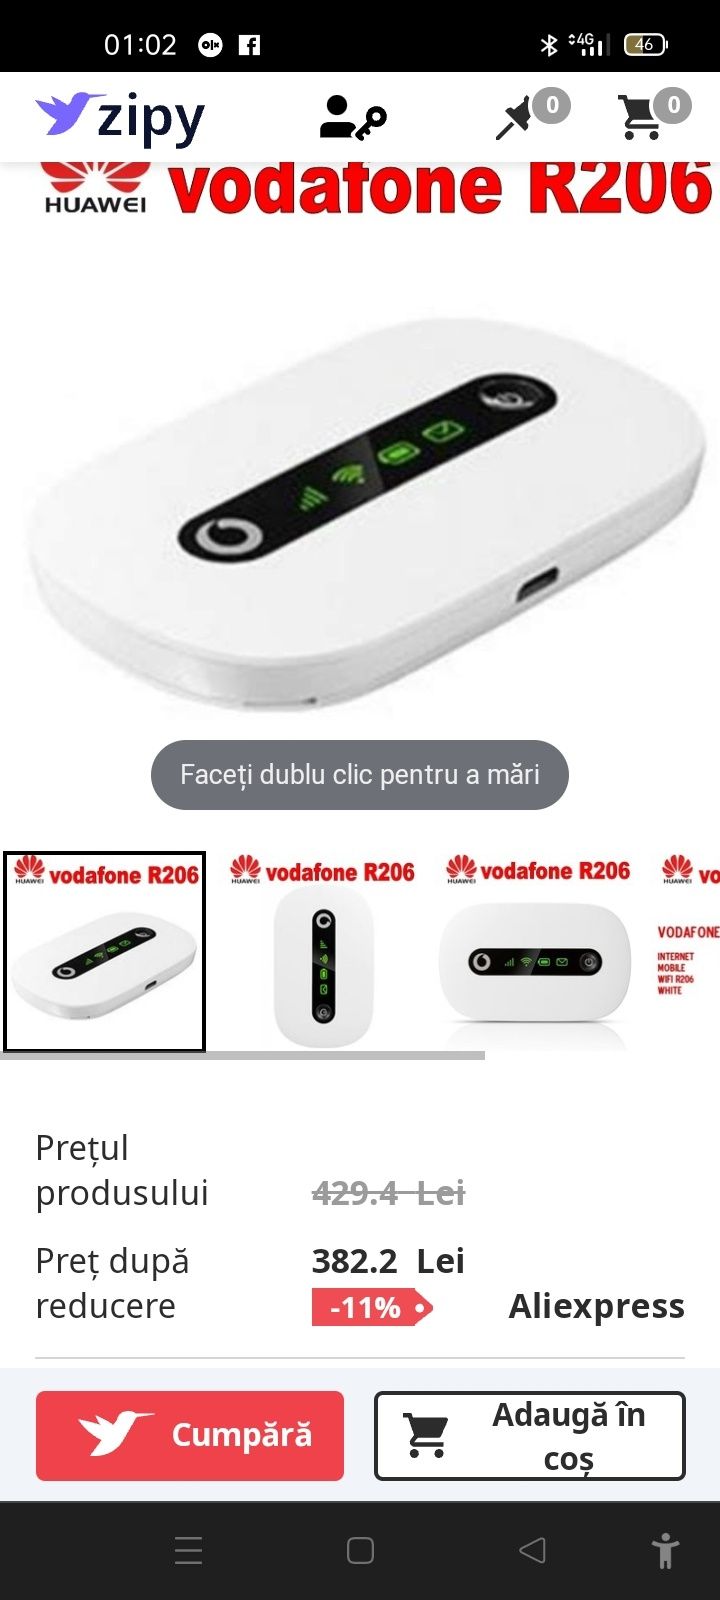 Vodafone Mobile Wi-Fi R206